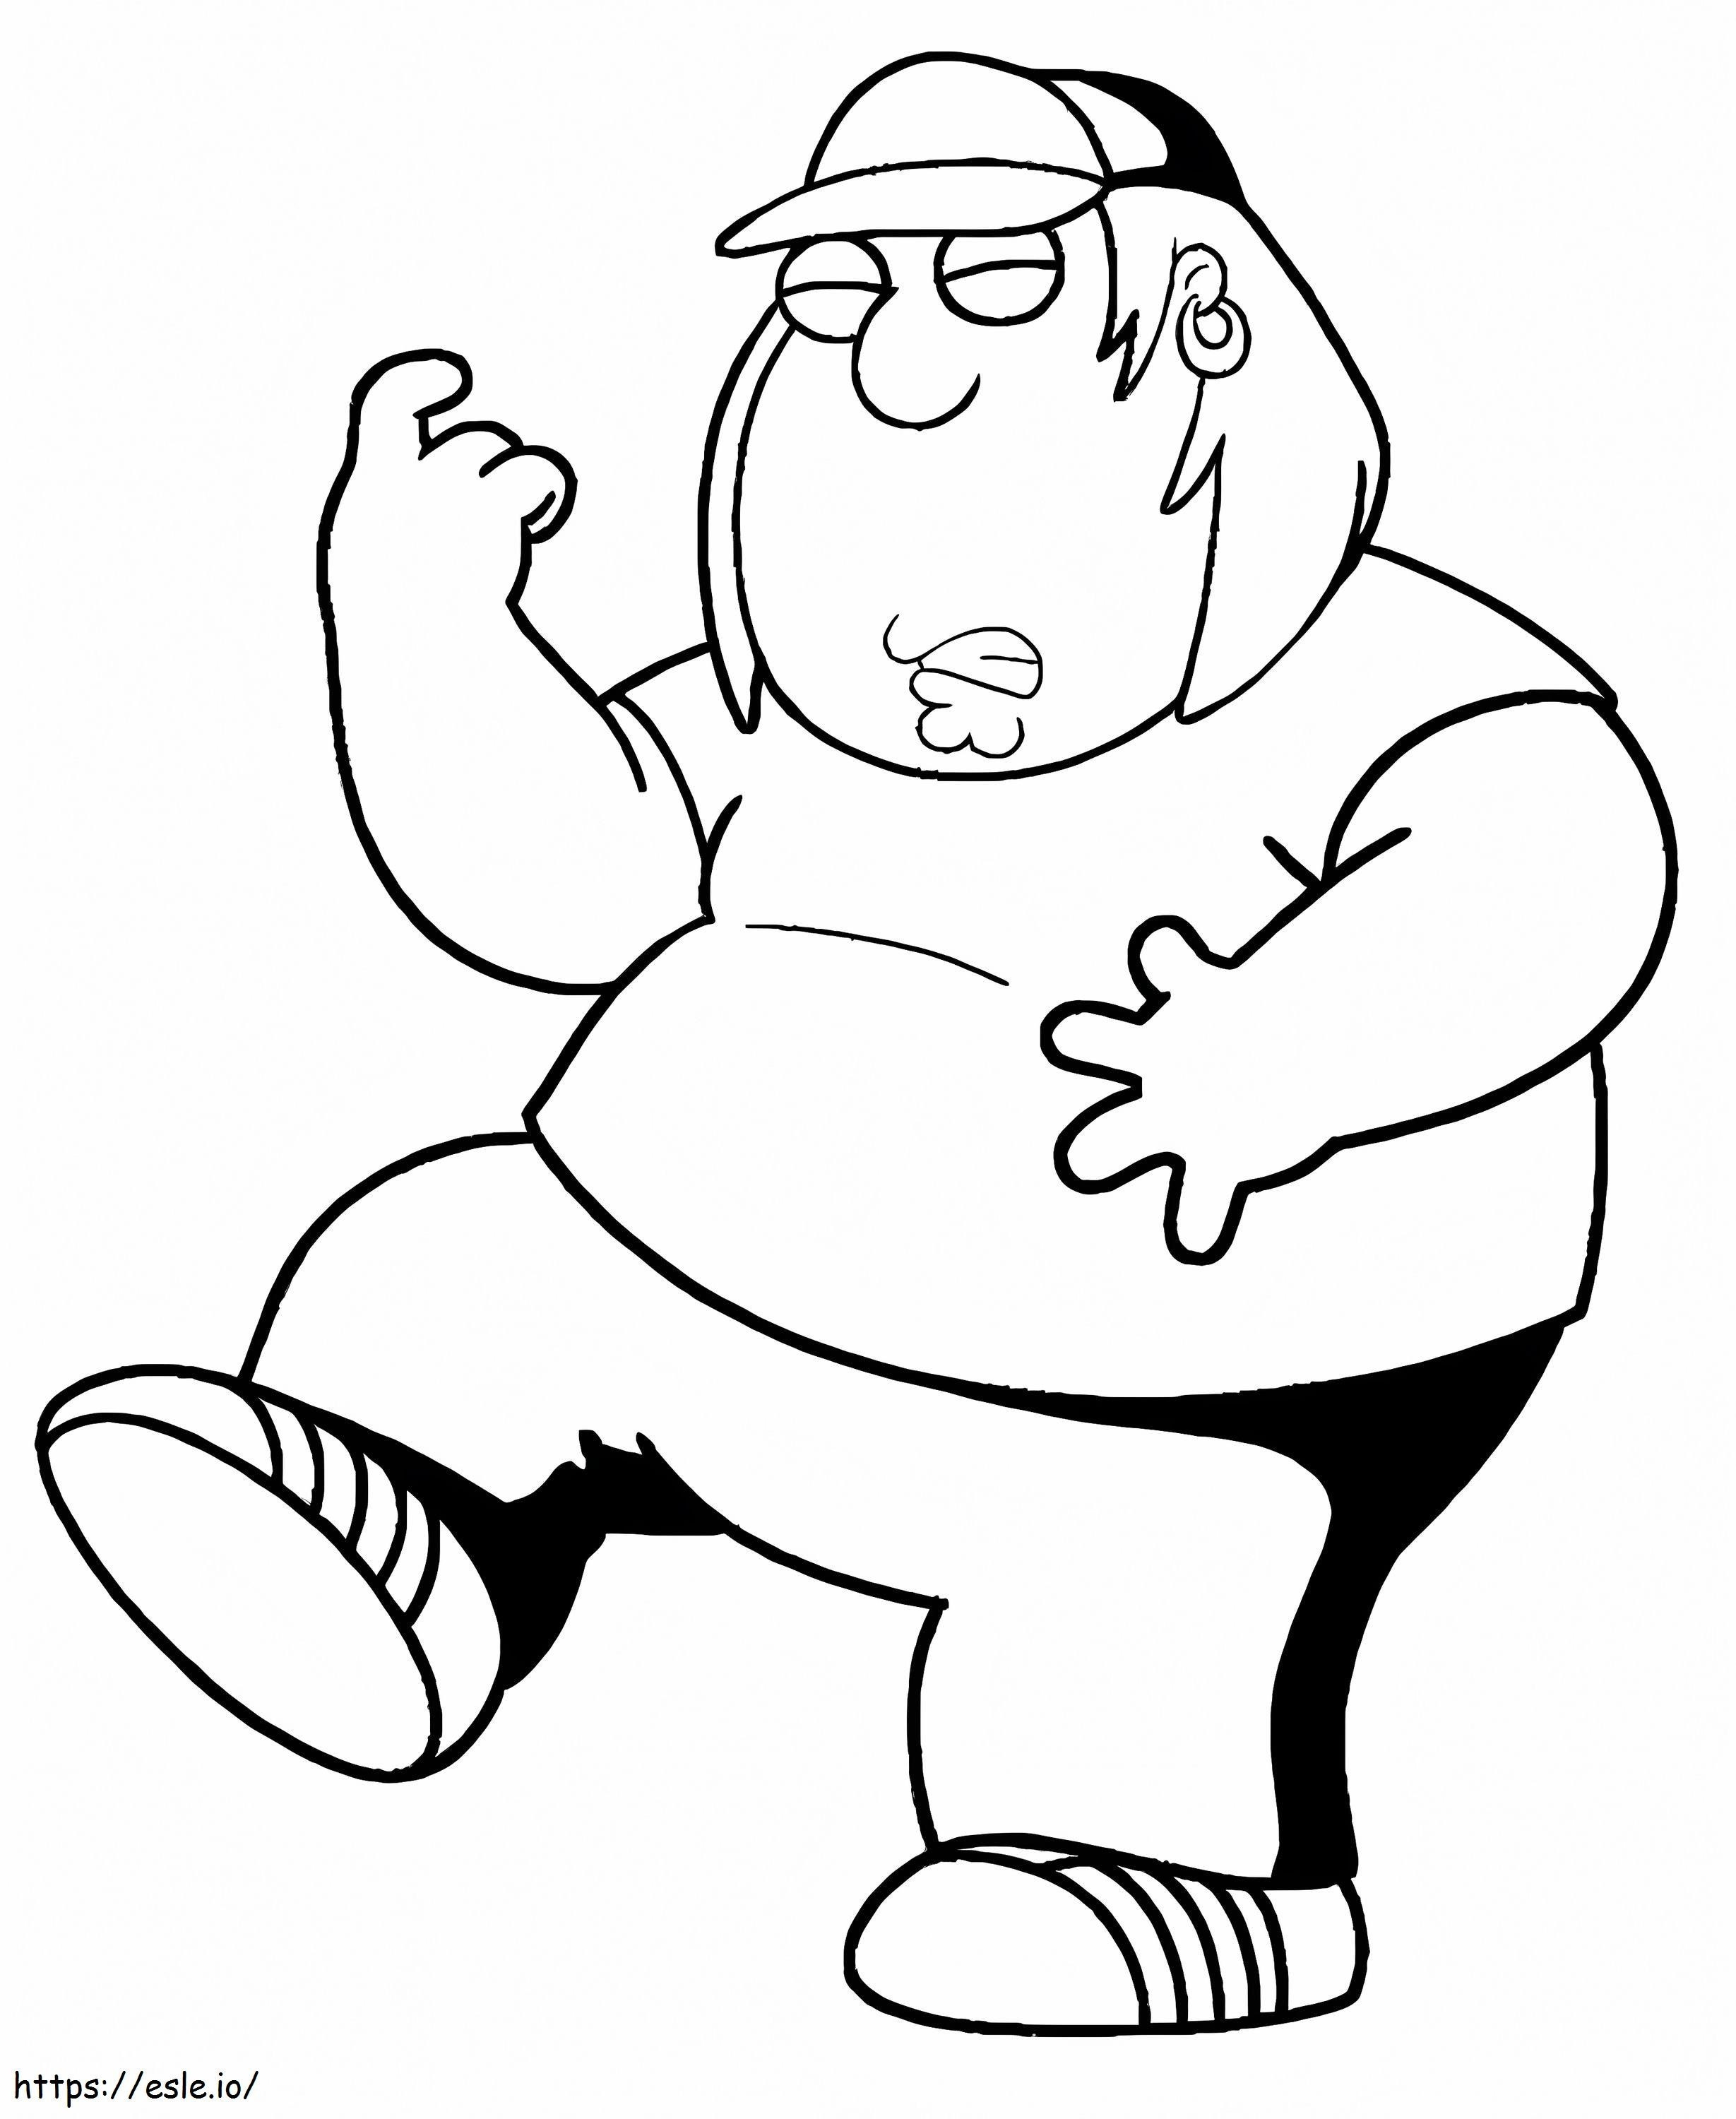 Chris Griffin Family Guy de colorat